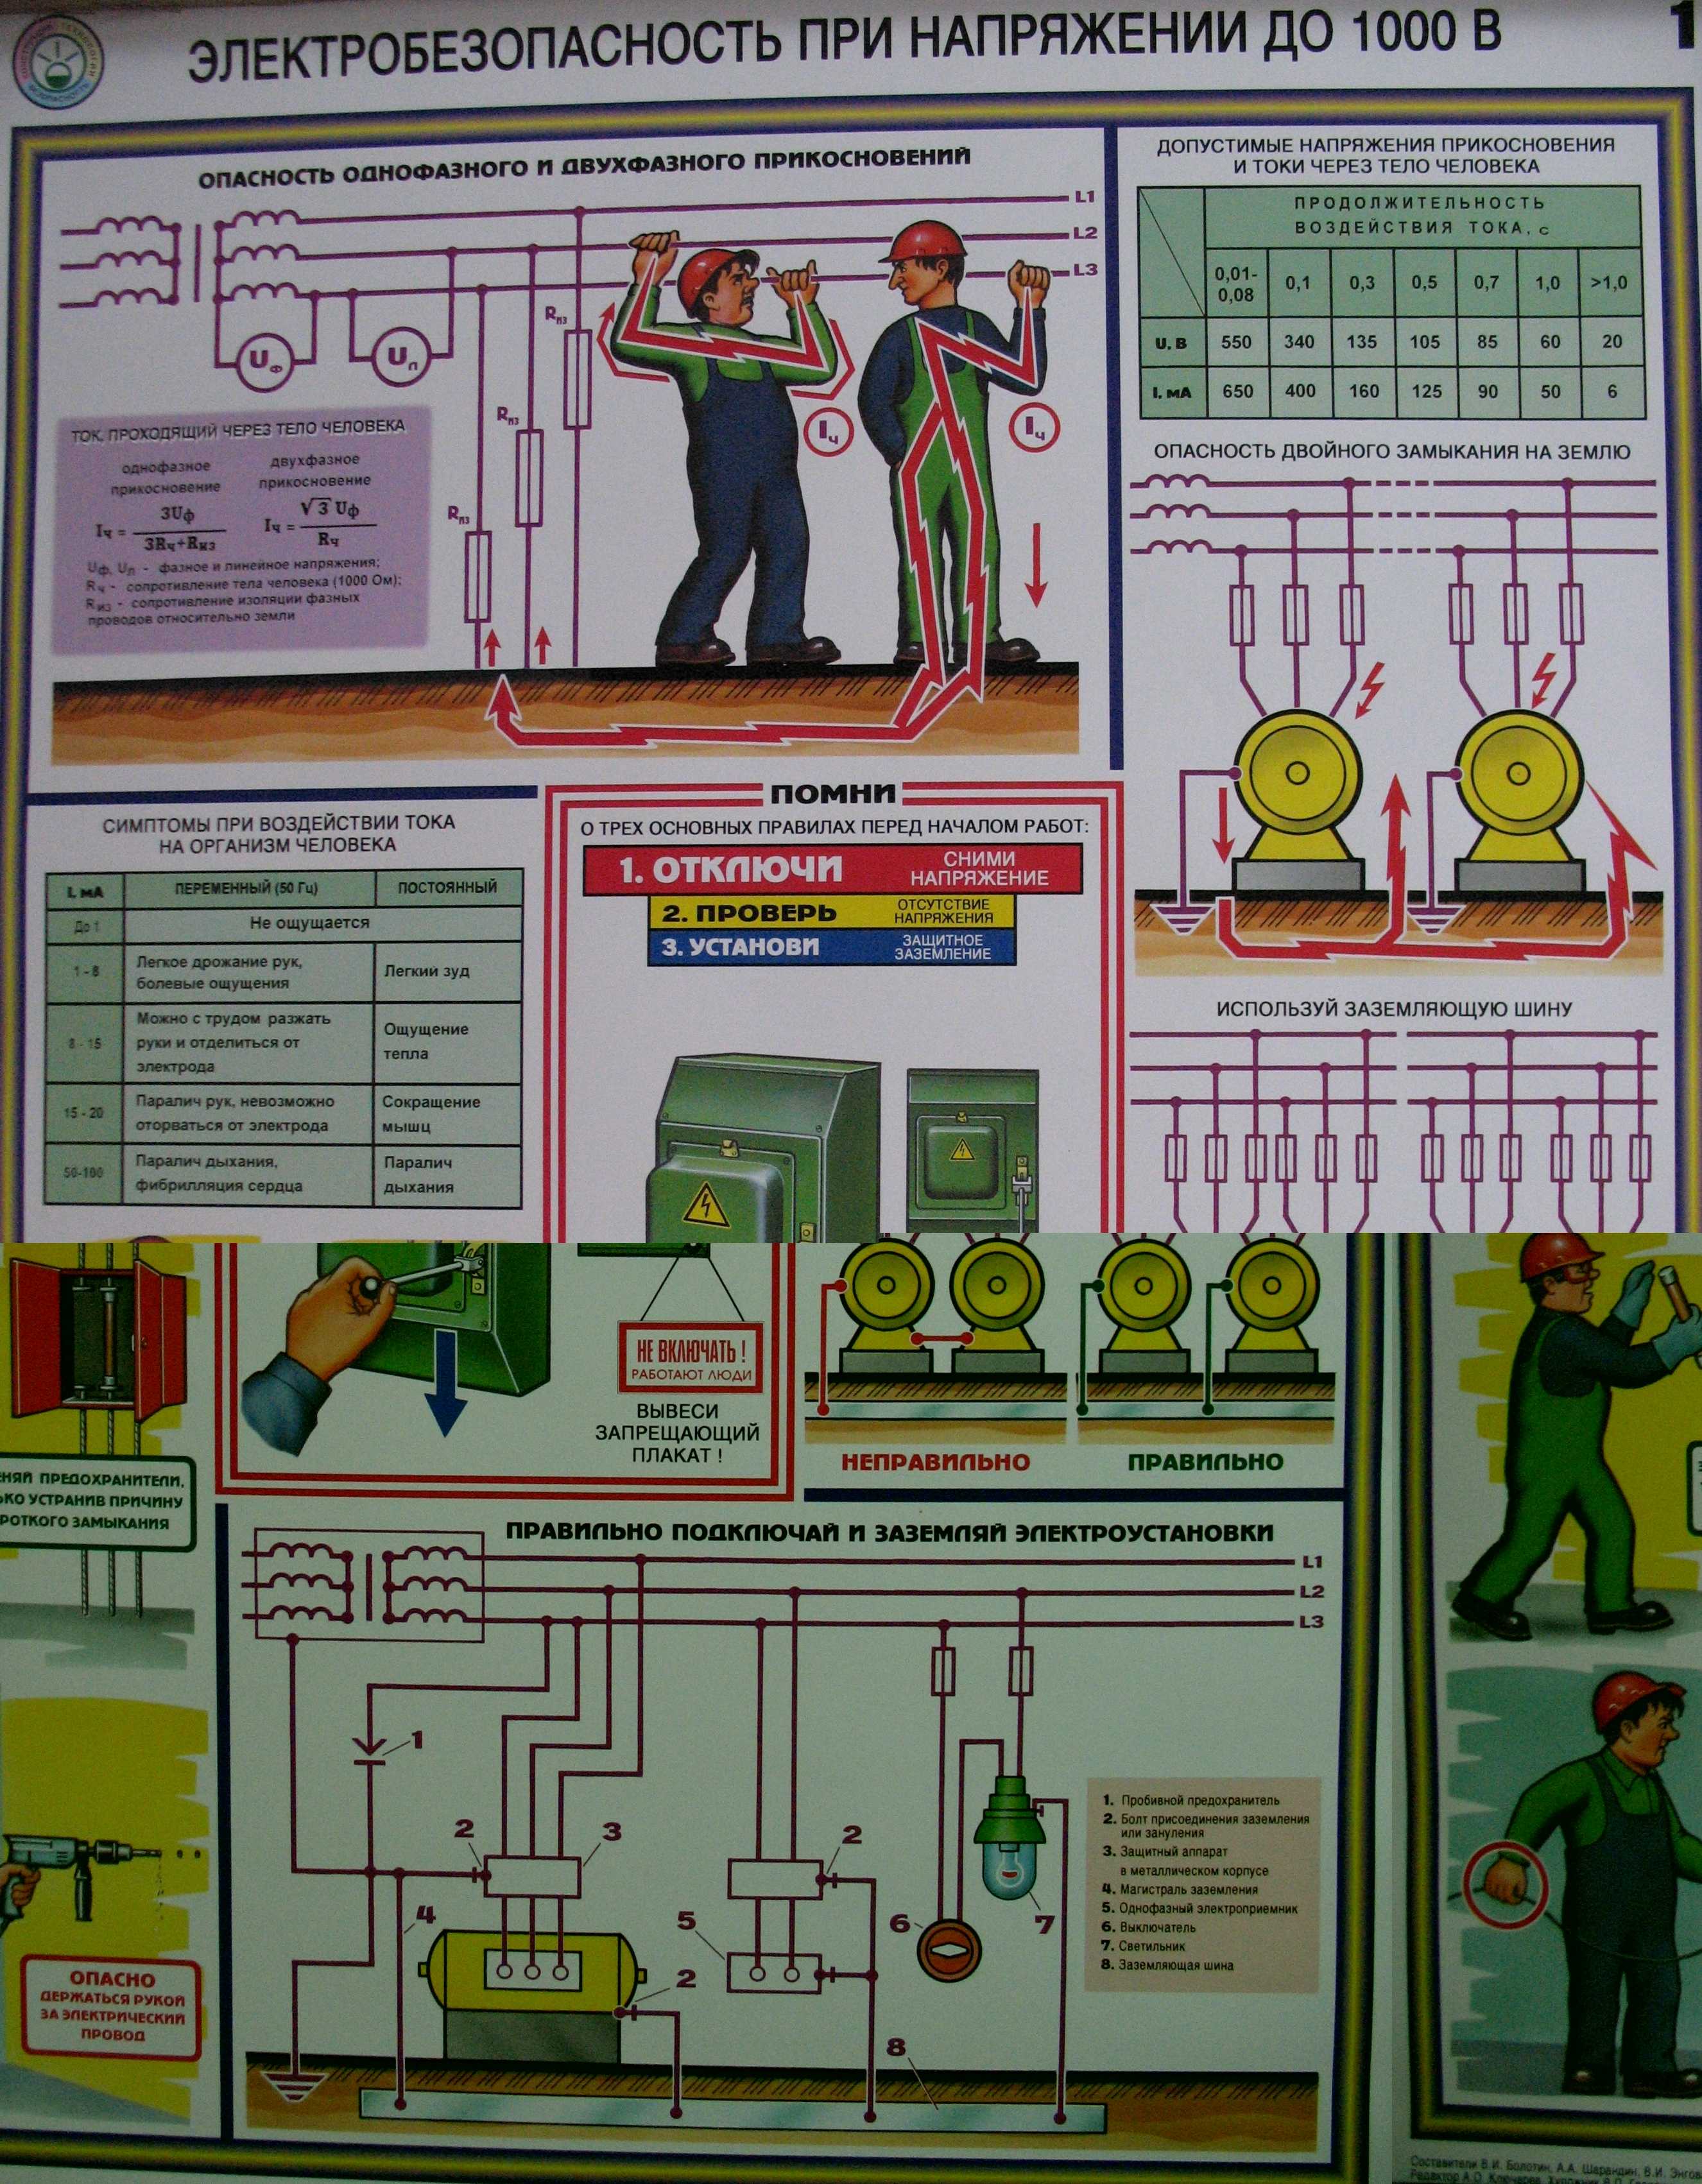 Определение и организация электробезопасности на производстве и в офисе. общие требования к обеспечению безопасности